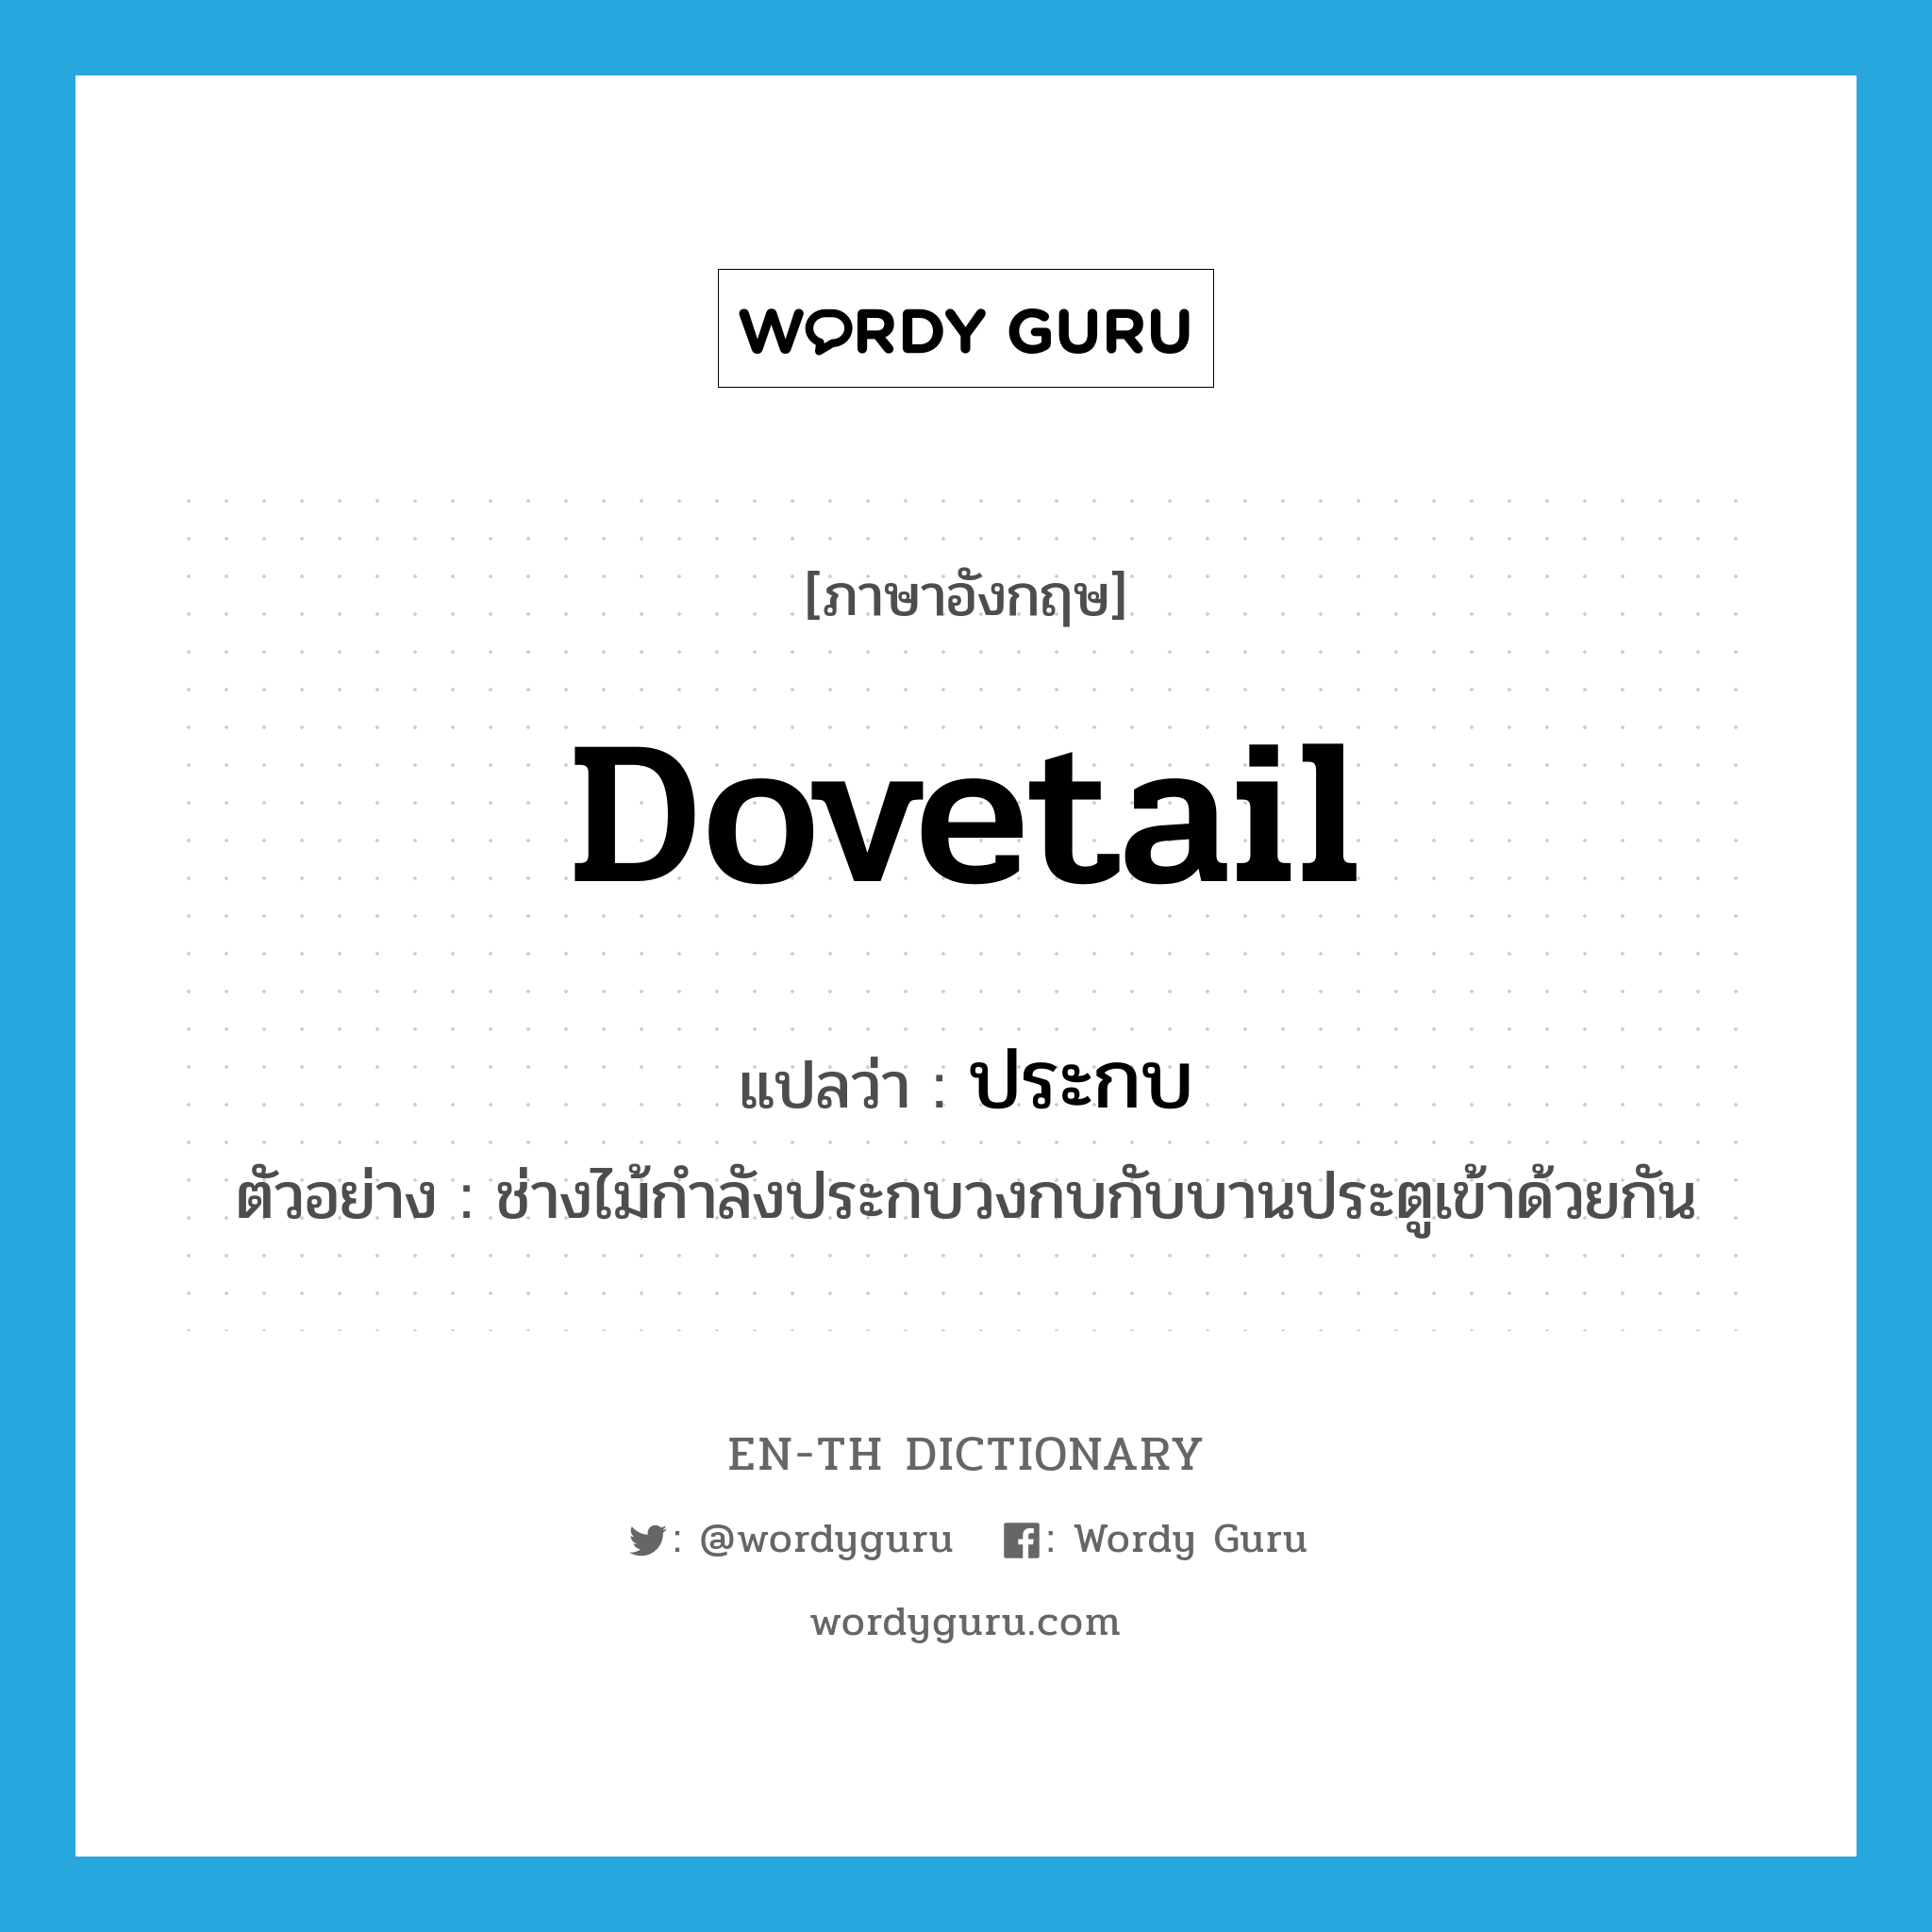 dovetail แปลว่า?, คำศัพท์ภาษาอังกฤษ dovetail แปลว่า ประกบ ประเภท V ตัวอย่าง ช่างไม้กำลังประกบวงกบกับบานประตูเข้าด้วยกัน หมวด V